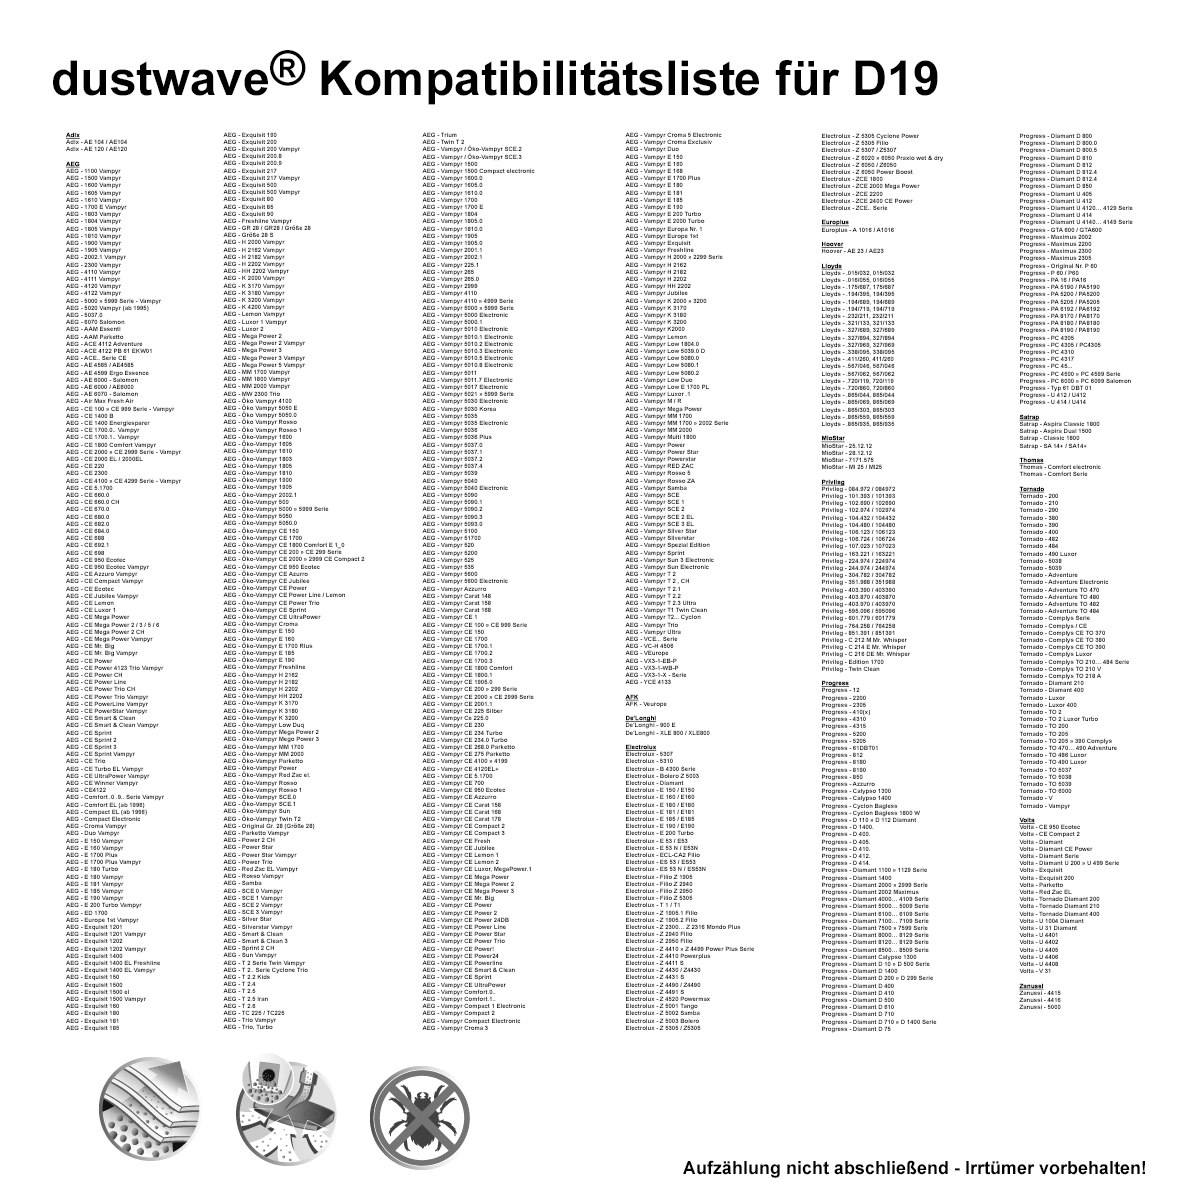 Dustwave® 1 Staubsaugerbeutel für Base BA 1000 / BA1000 - hocheffizient mit Hygieneverschluss - Made in Germany